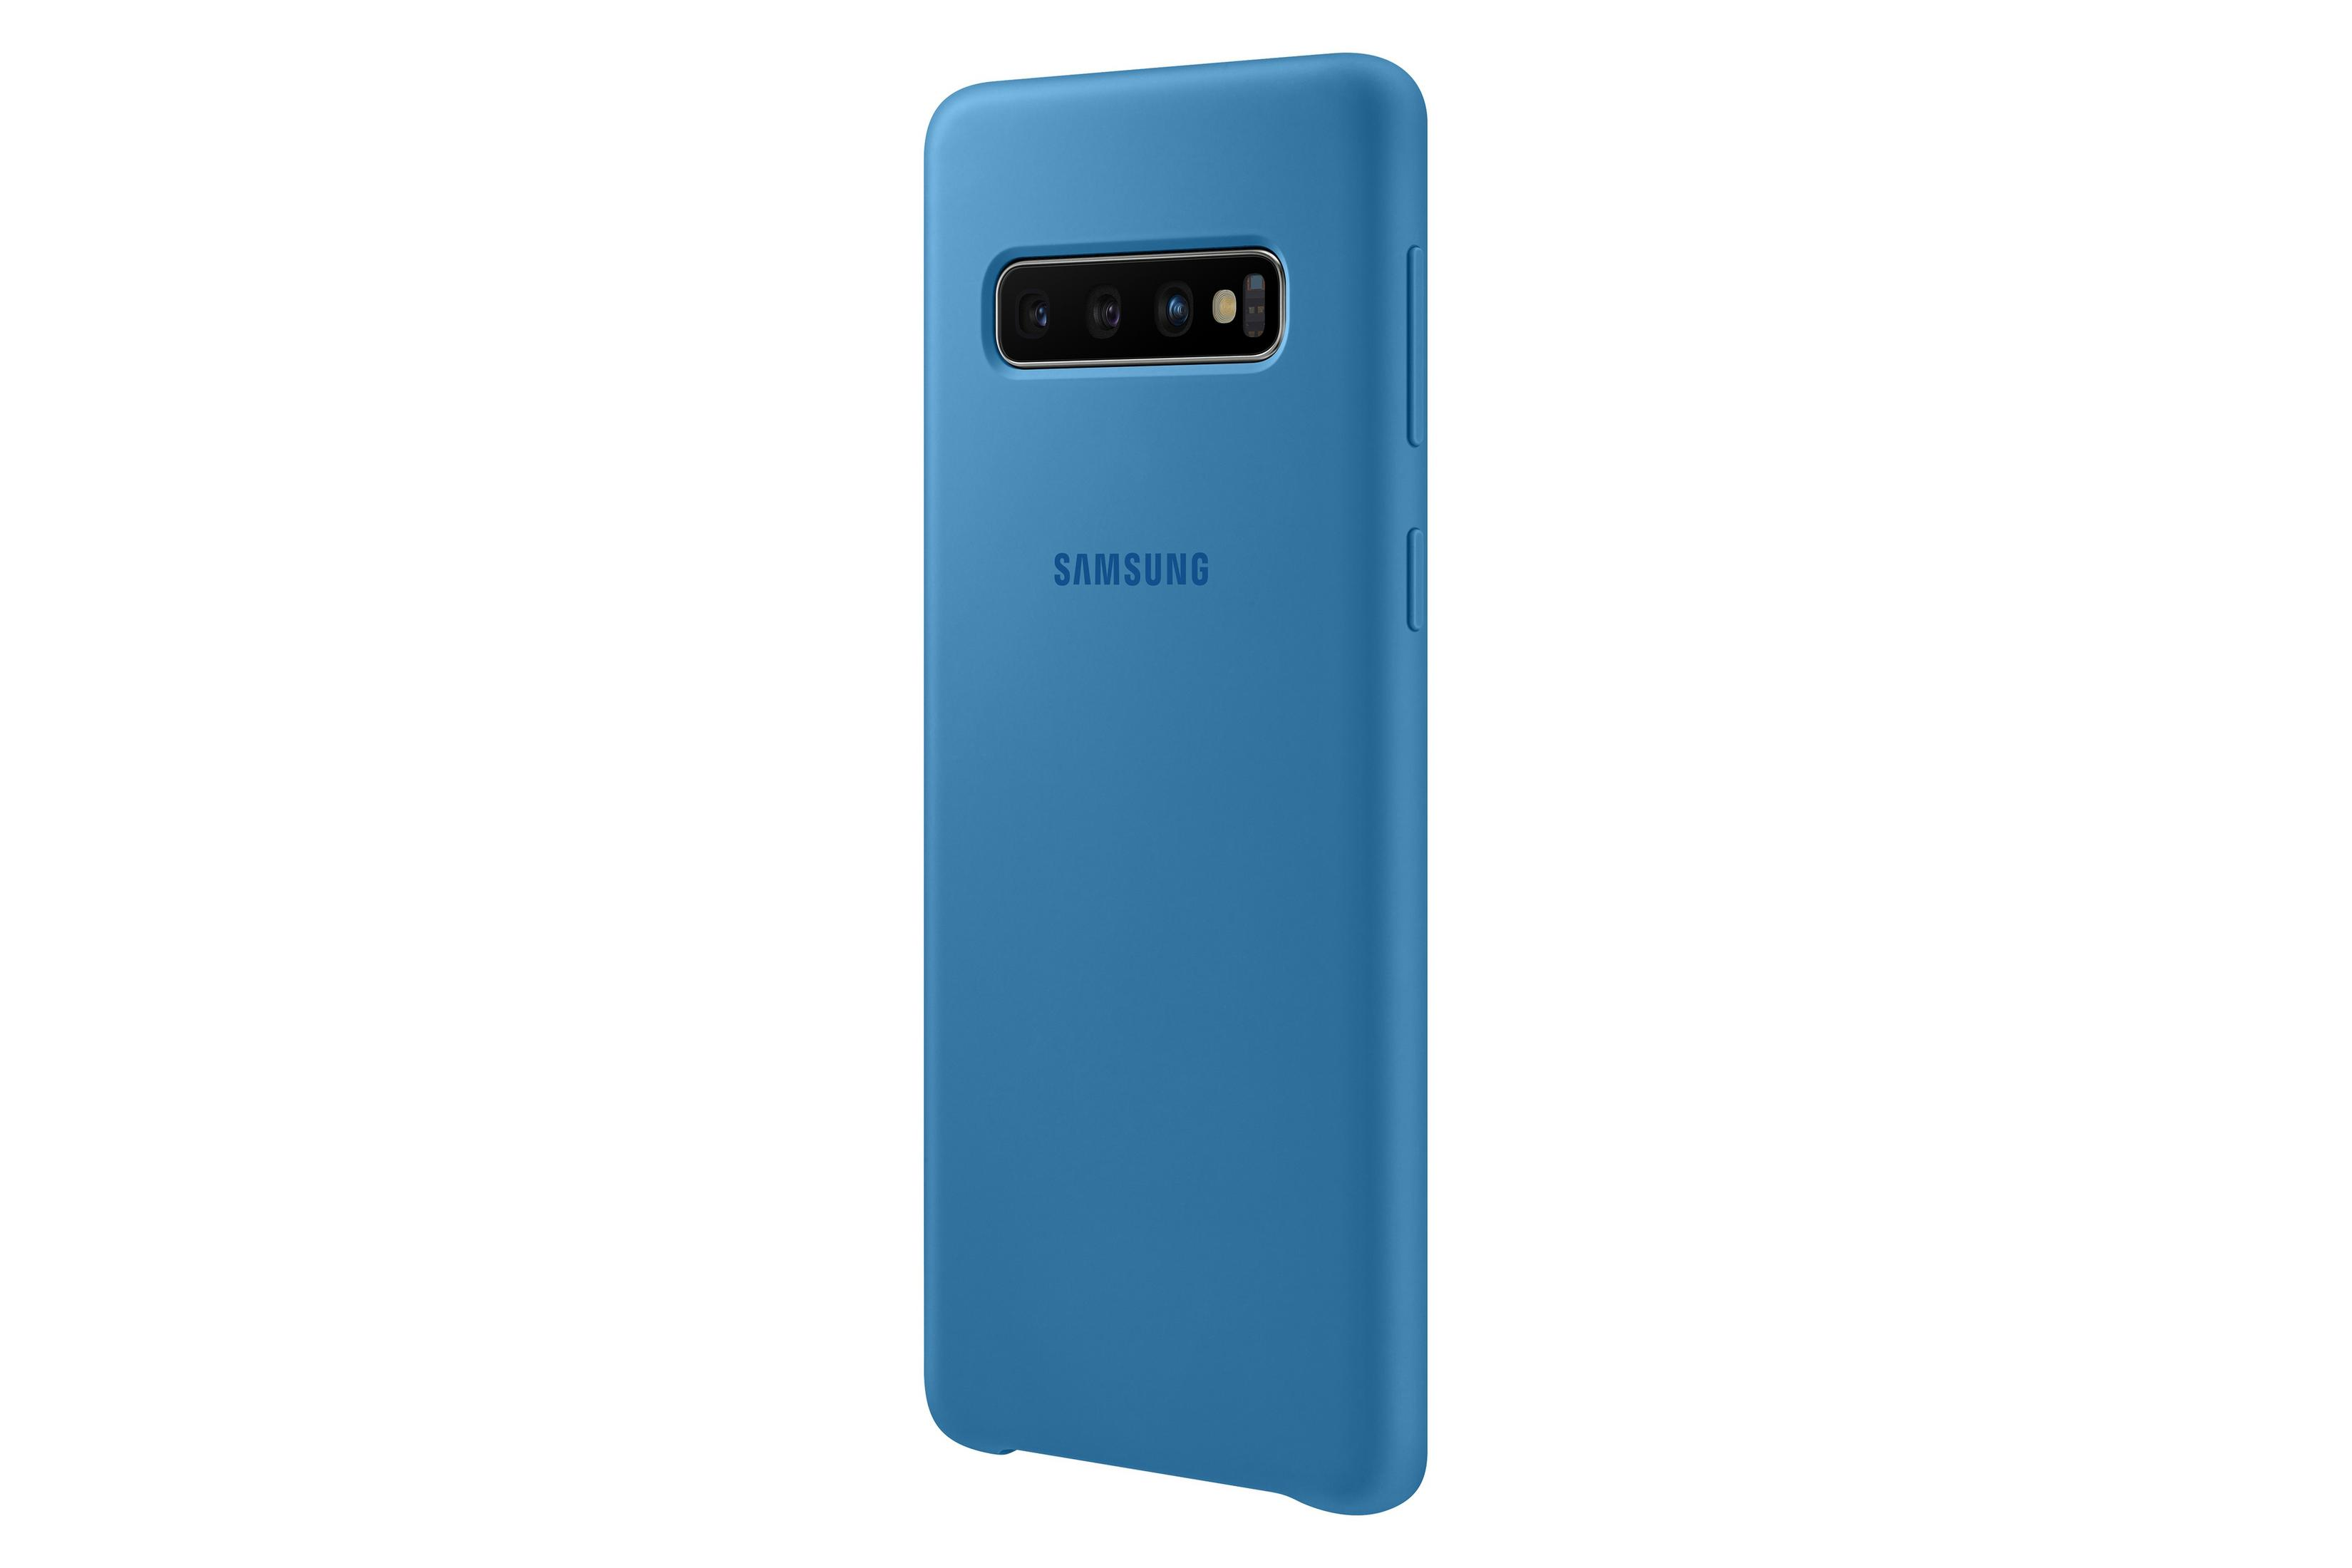 Galaxy SAMSUNG Blau COVER S10, SILICONE EF-PG973TLEGWW Backcover, Samsung, S10 BLUE,